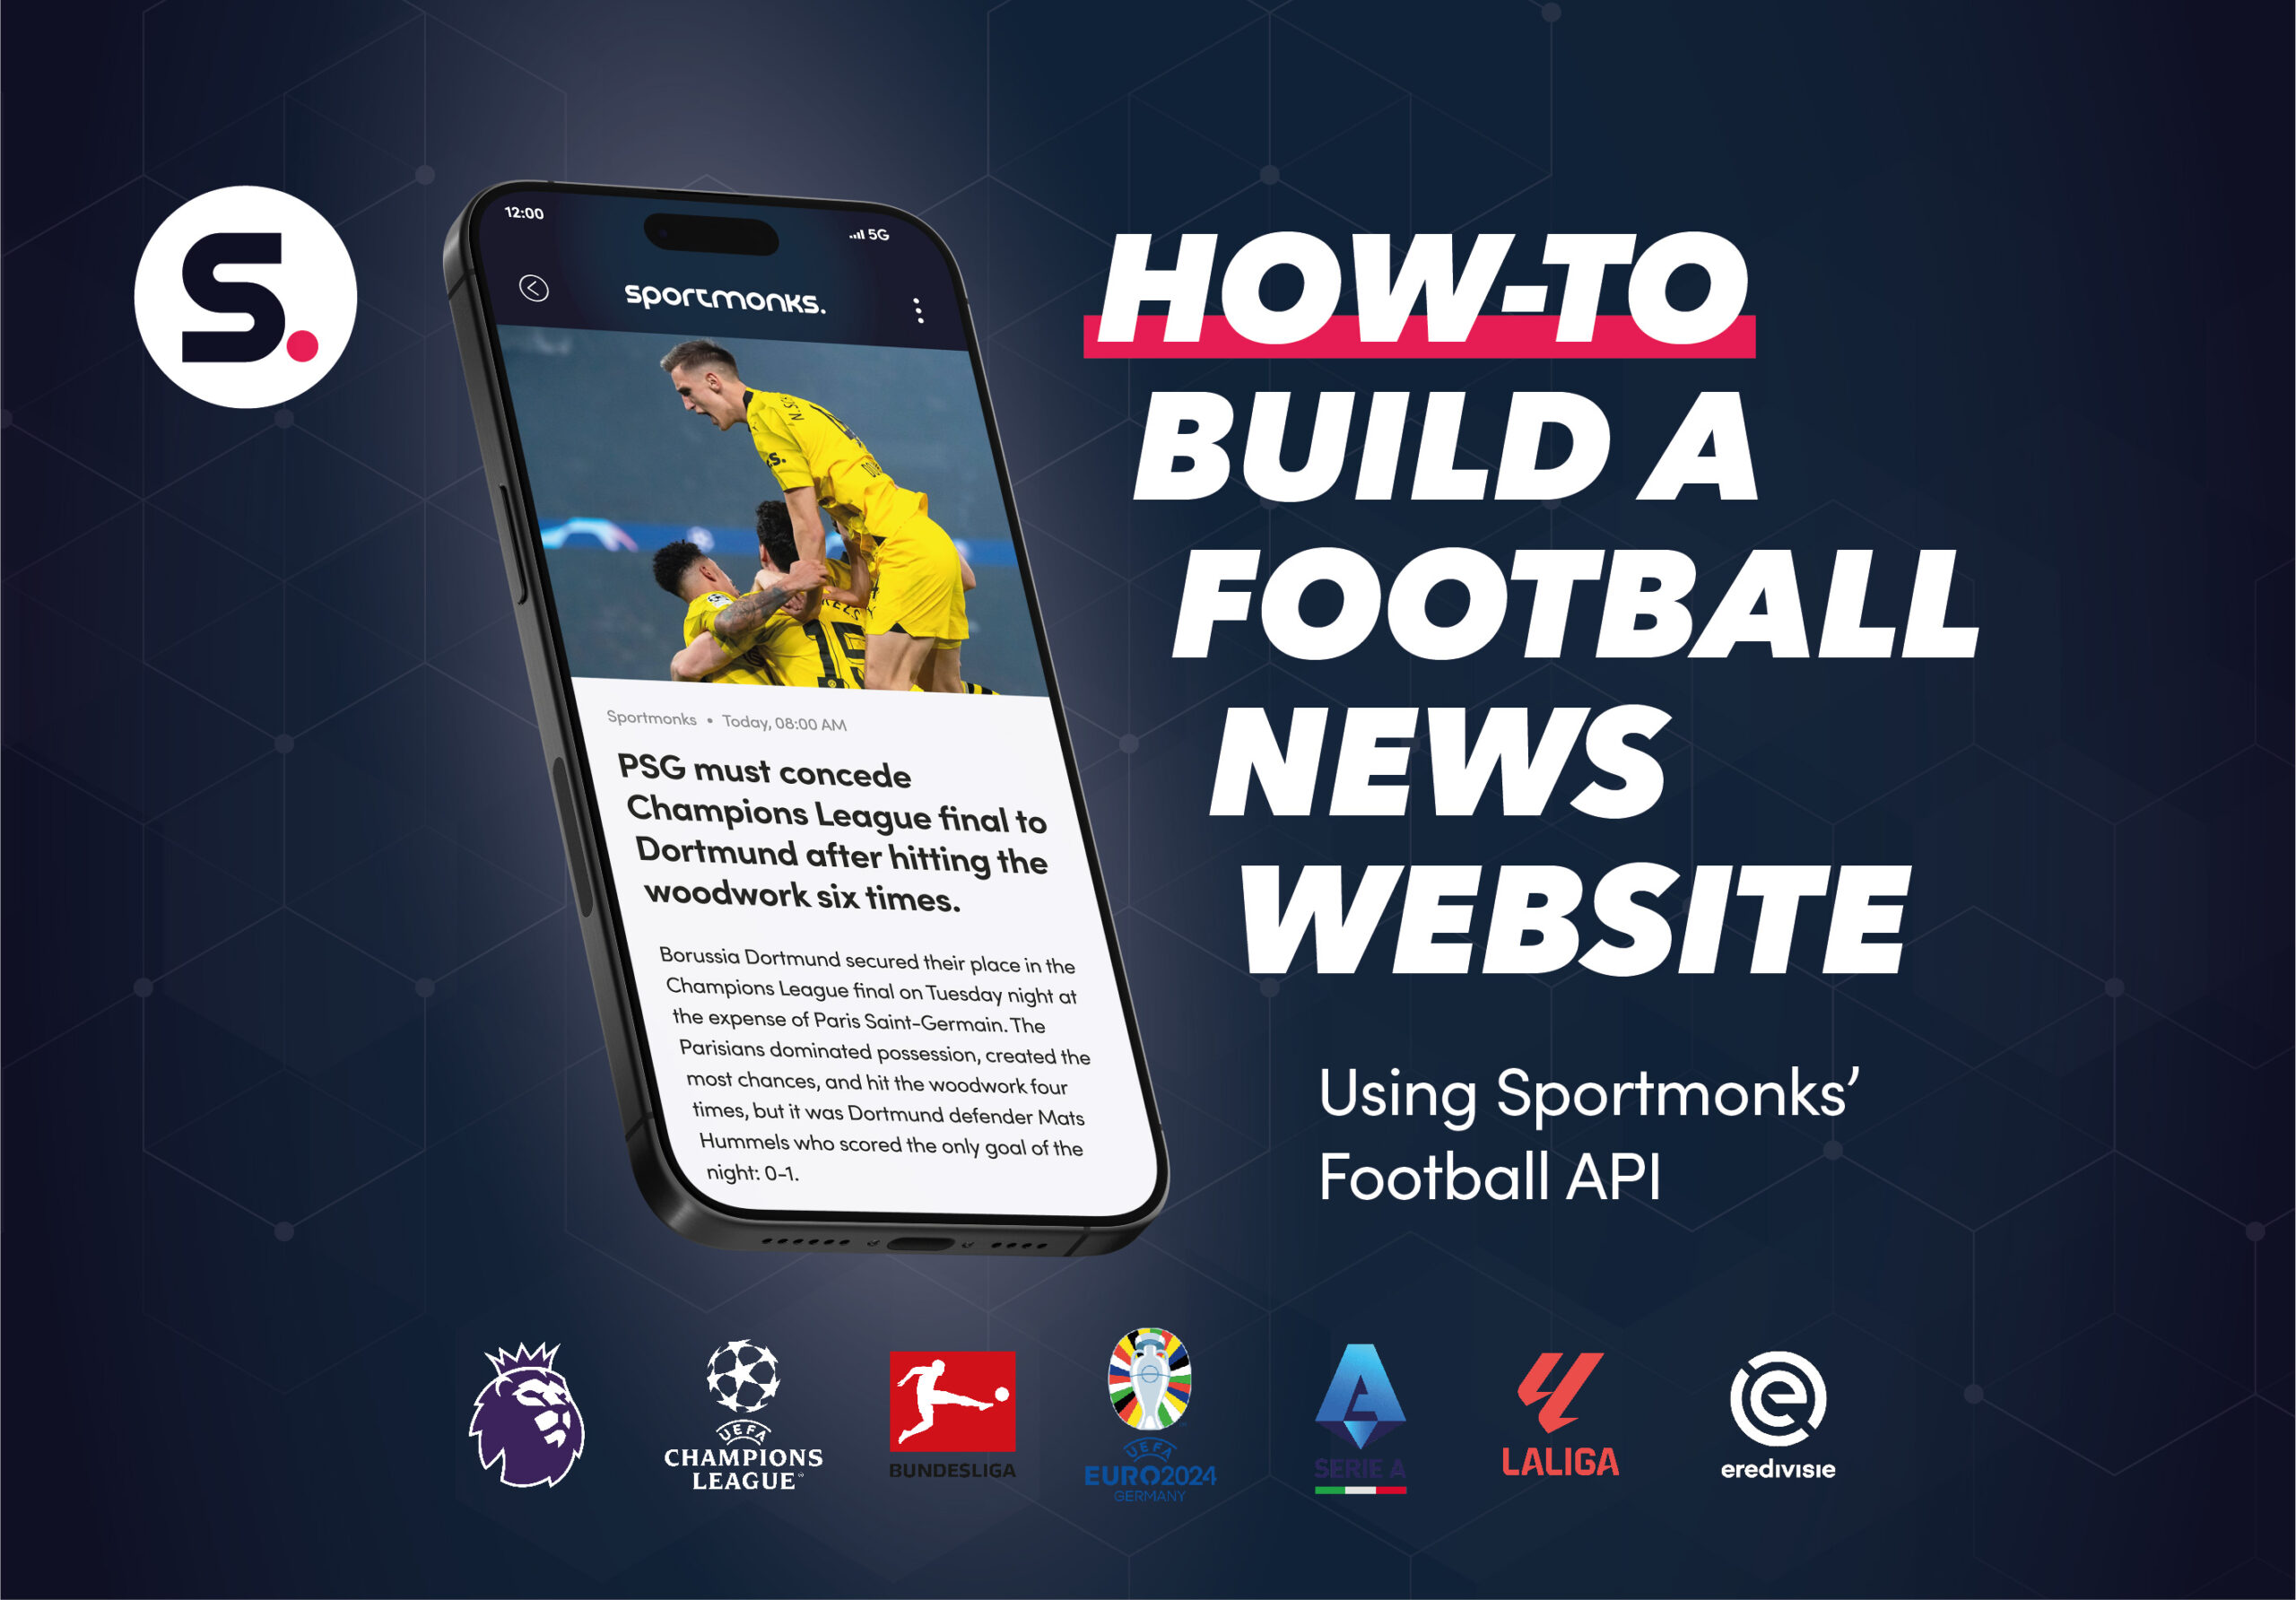 How-to build a football news website using Sportmonks’ Football API